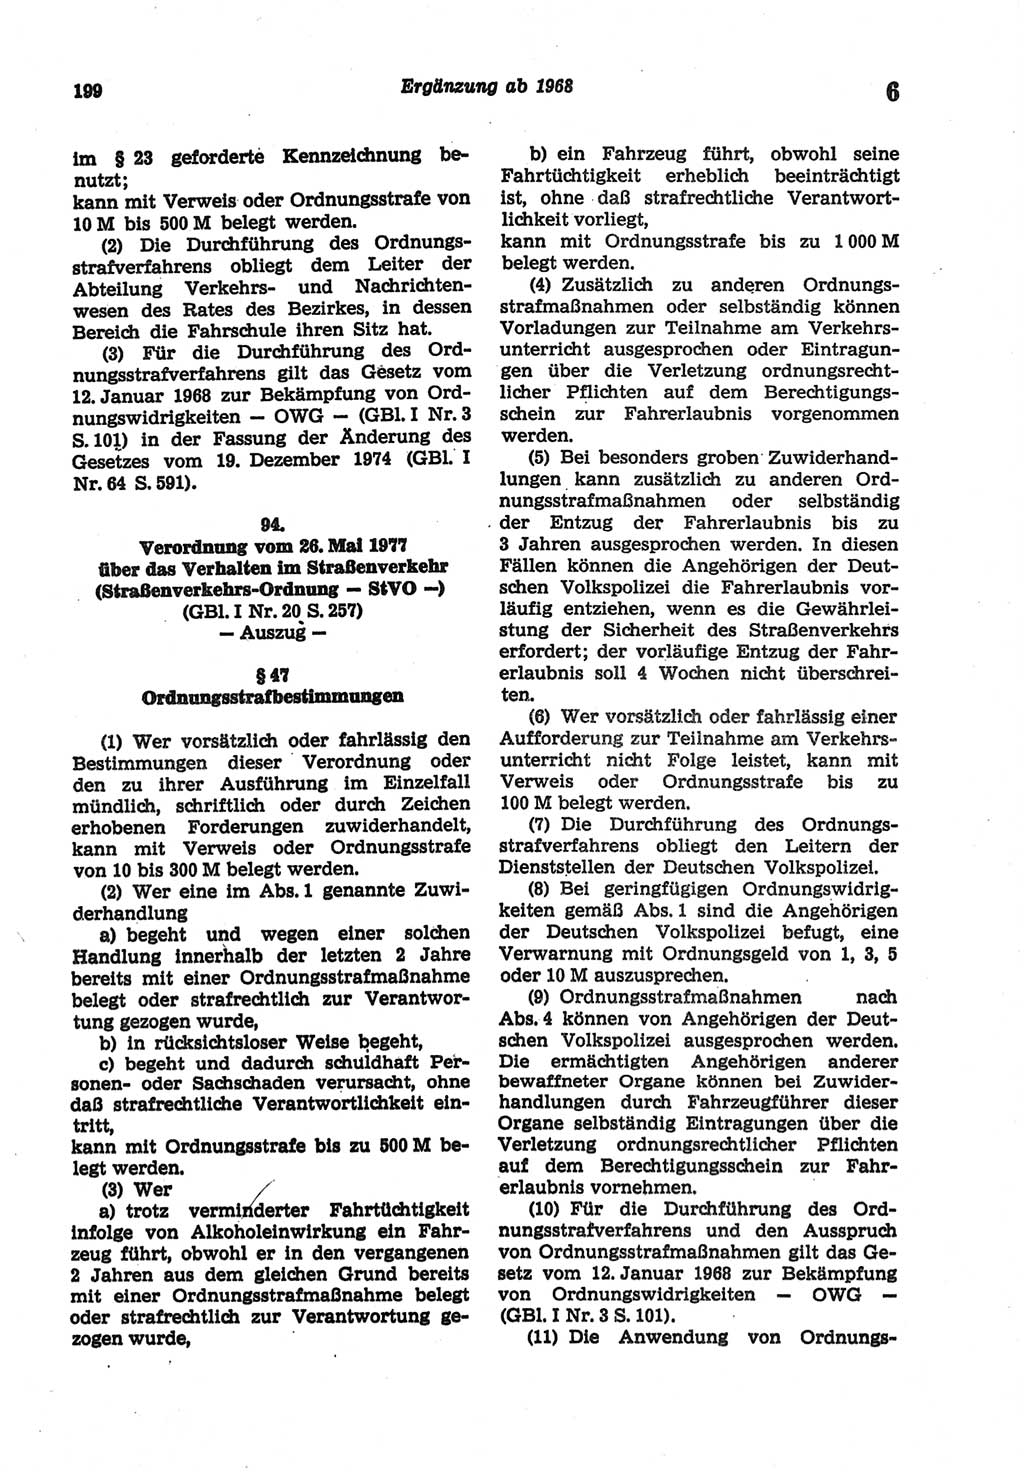 Strafgesetzbuch (StGB) der Deutschen Demokratischen Republik (DDR) und angrenzende Gesetze und Bestimmungen 1977, Seite 199 (StGB DDR Ges. Best. 1977, S. 199)